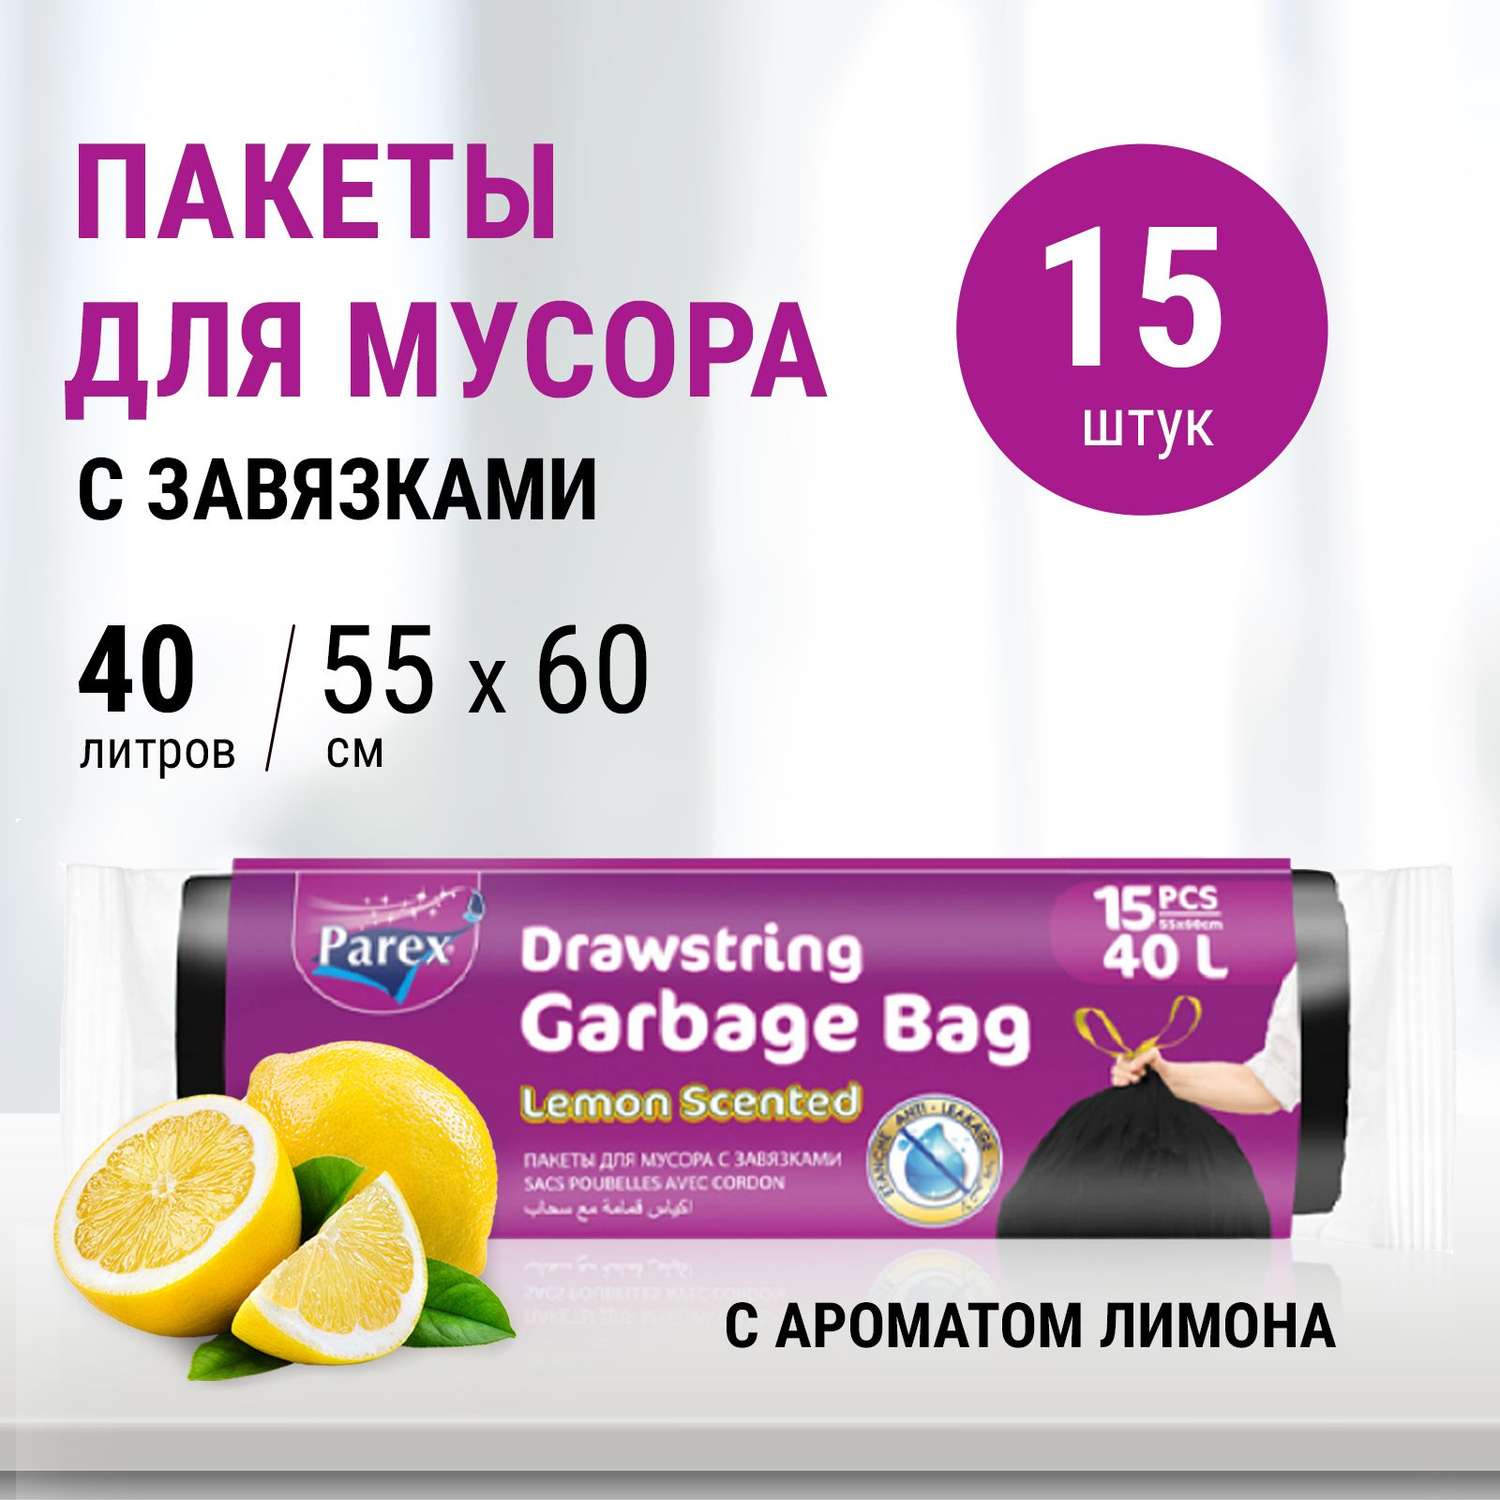 Пакеты для мусора Parex с завязками с запахом лимона 15 шт 40 л - фото 2